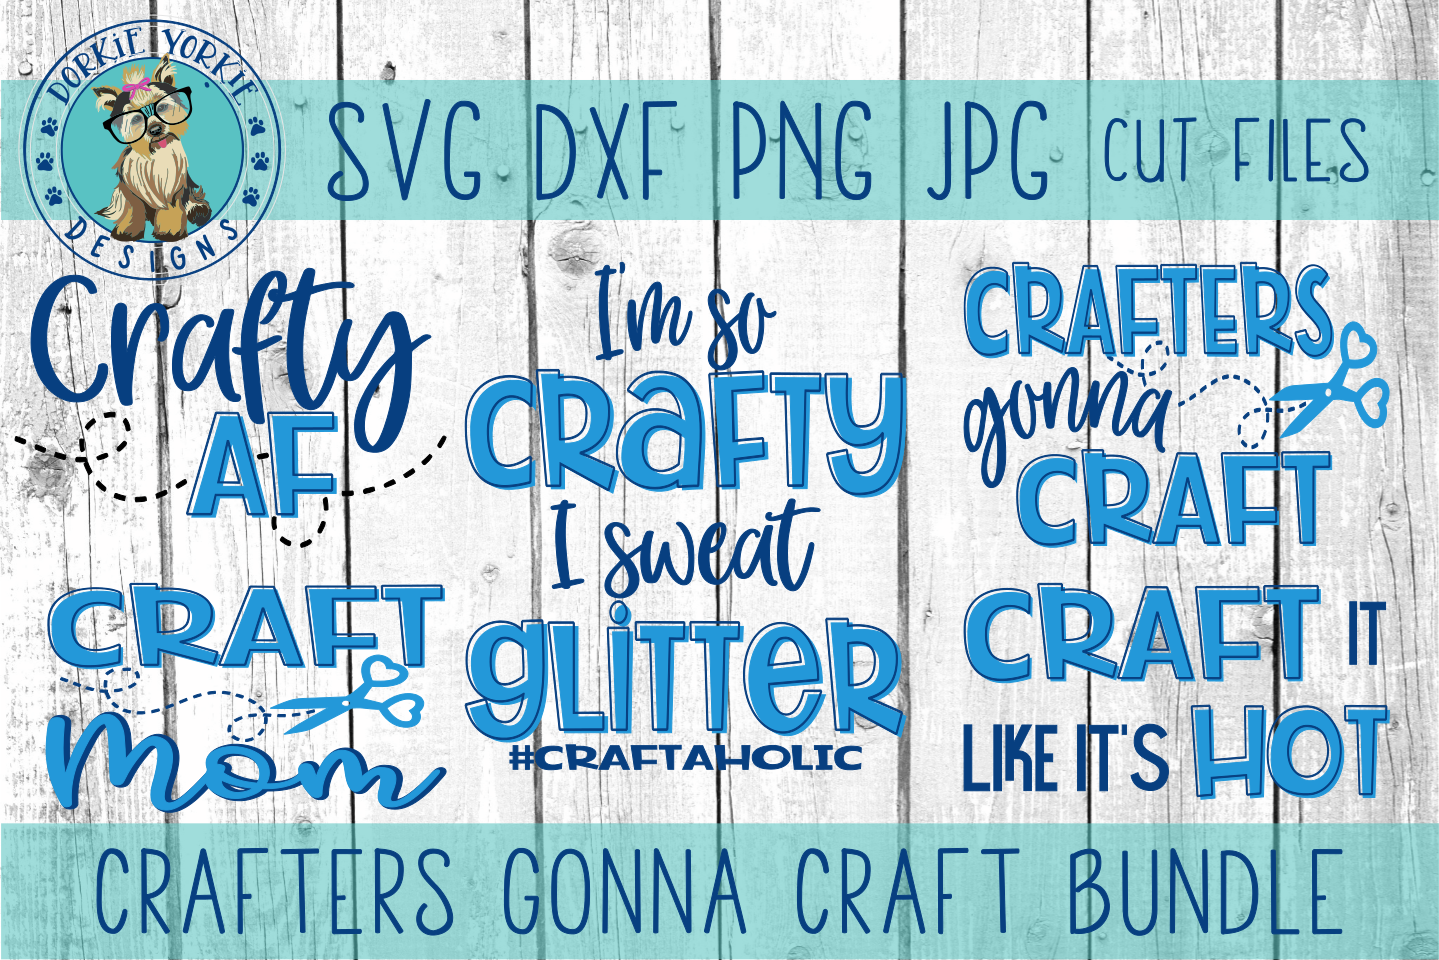 Download Crafters Gonna Craft BUNDLE - mom, af, crafty,SVG cut file